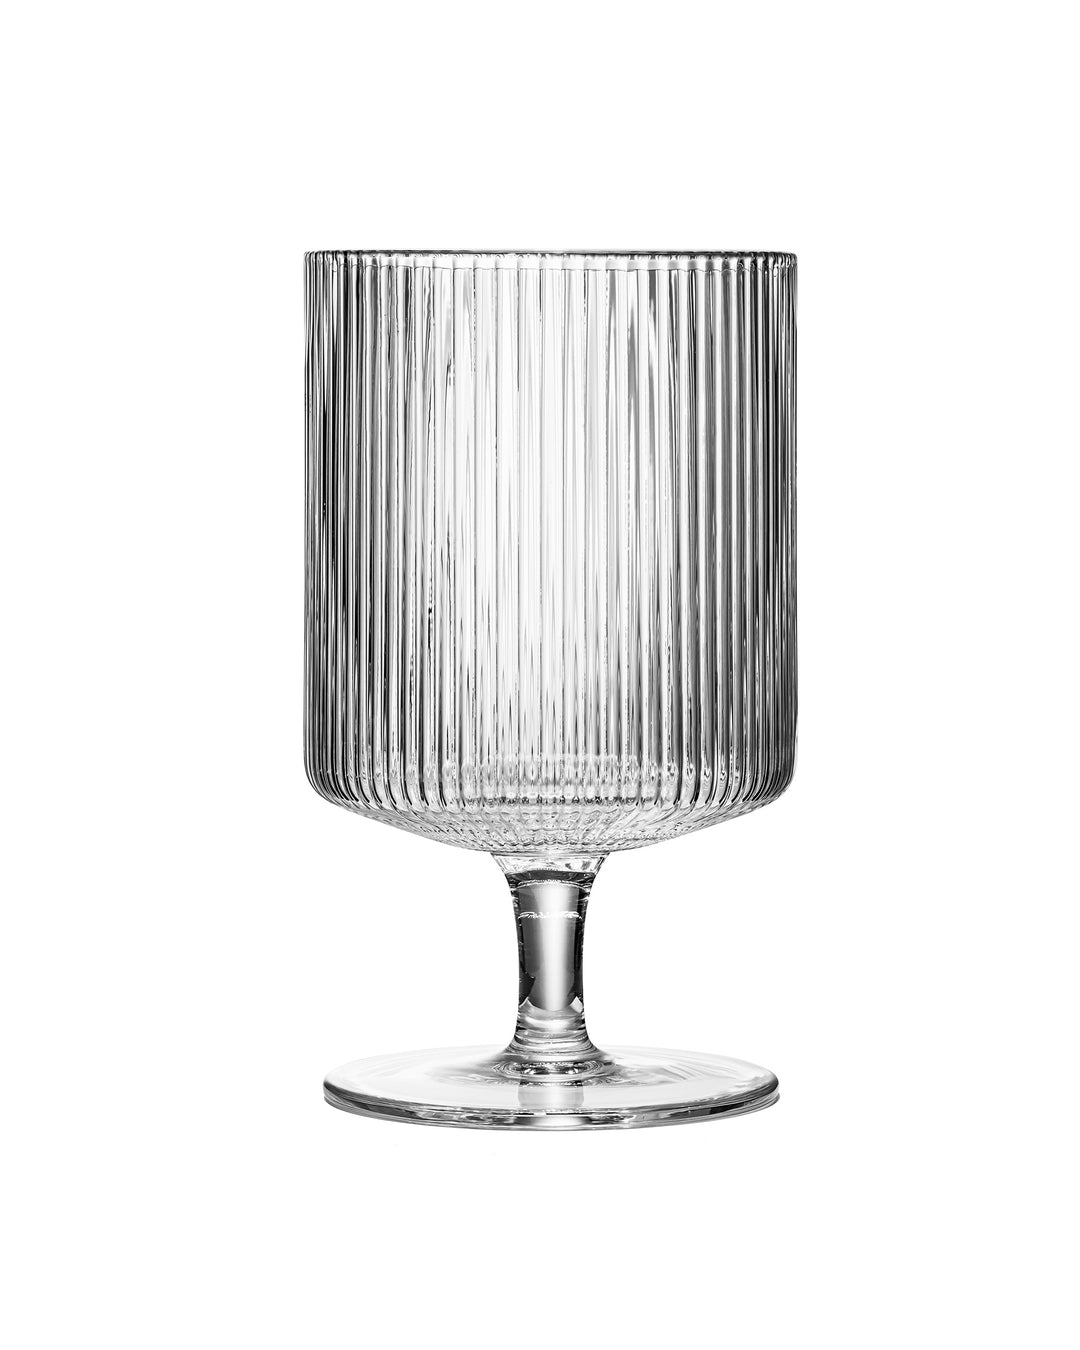 GLASSIQUE CADEAU Vintage Art Deco Ribbed Goblet Cocktail Glasses with Stem  | Set of 4 | 10 oz Short …See more GLASSIQUE CADEAU Vintage Art Deco Ribbed